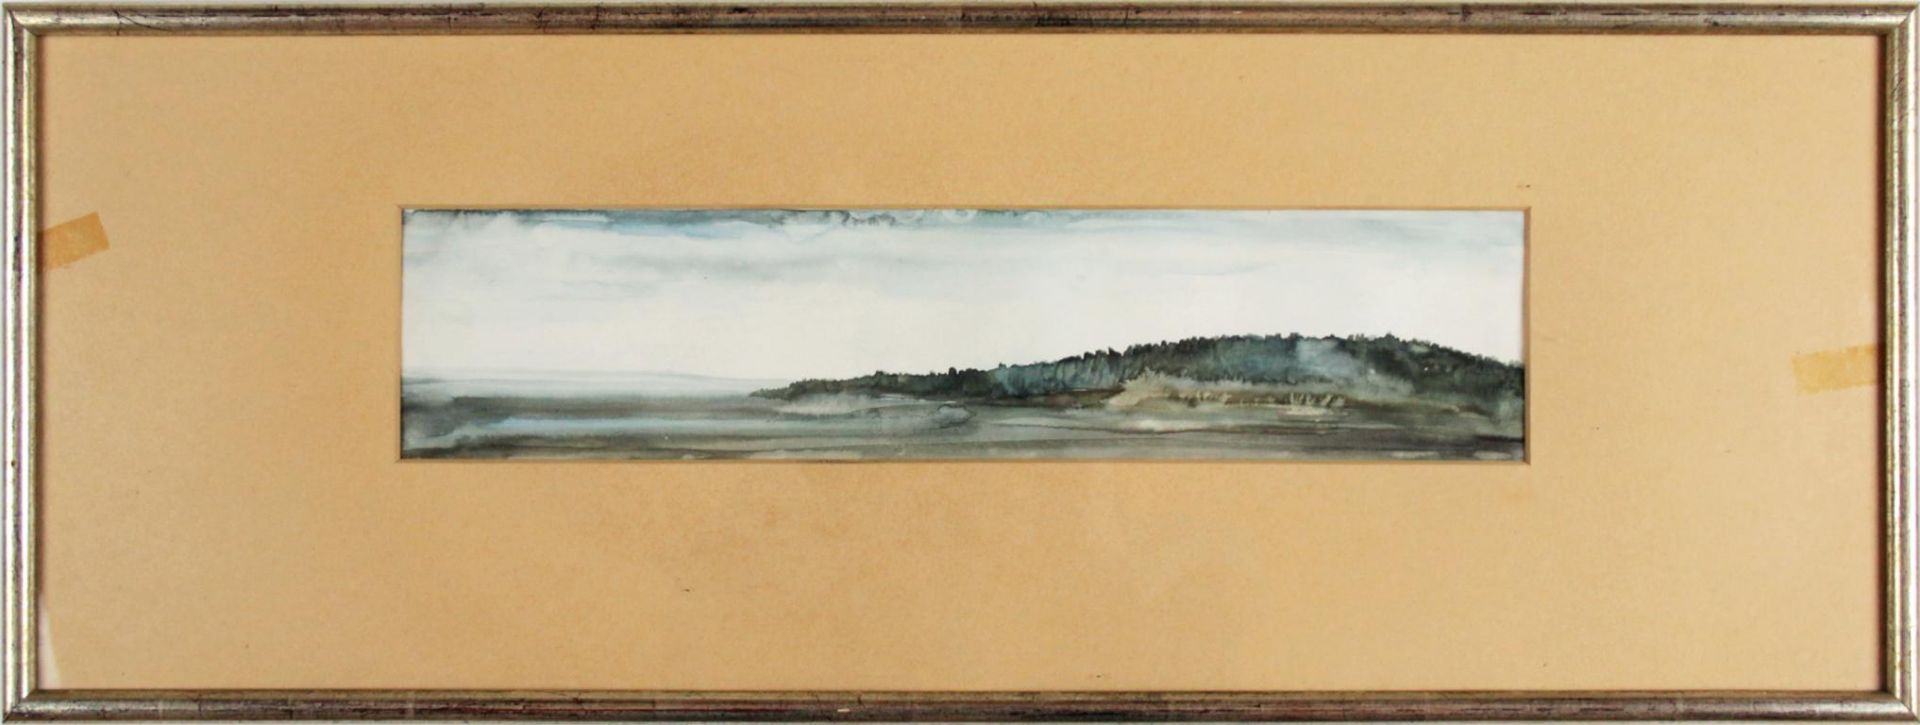 Edeltraud Walenta(geb. 1944)"Waldviertler Landschaft"1975Aquarell auf Papier; gerahmt (ungeöffnet) - Bild 2 aus 3